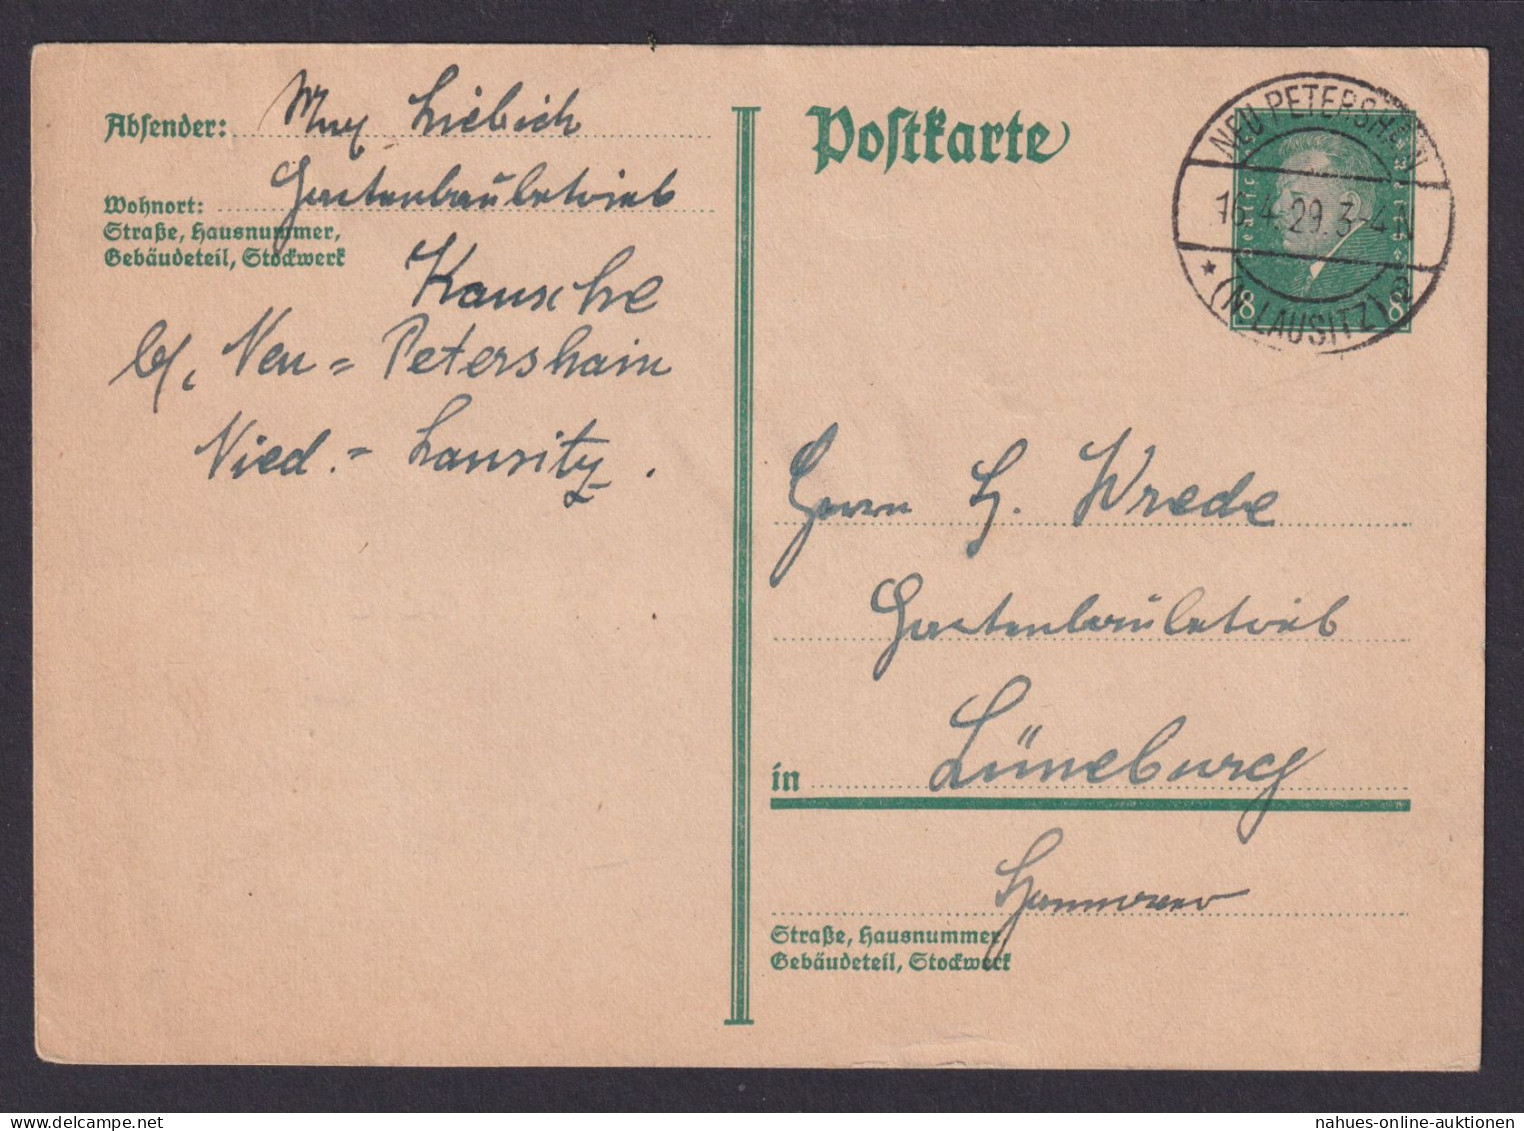 Neu Petrershain Brandenburg Deutsches Reich Ganzsache N. Lüneburg - Lettres & Documents